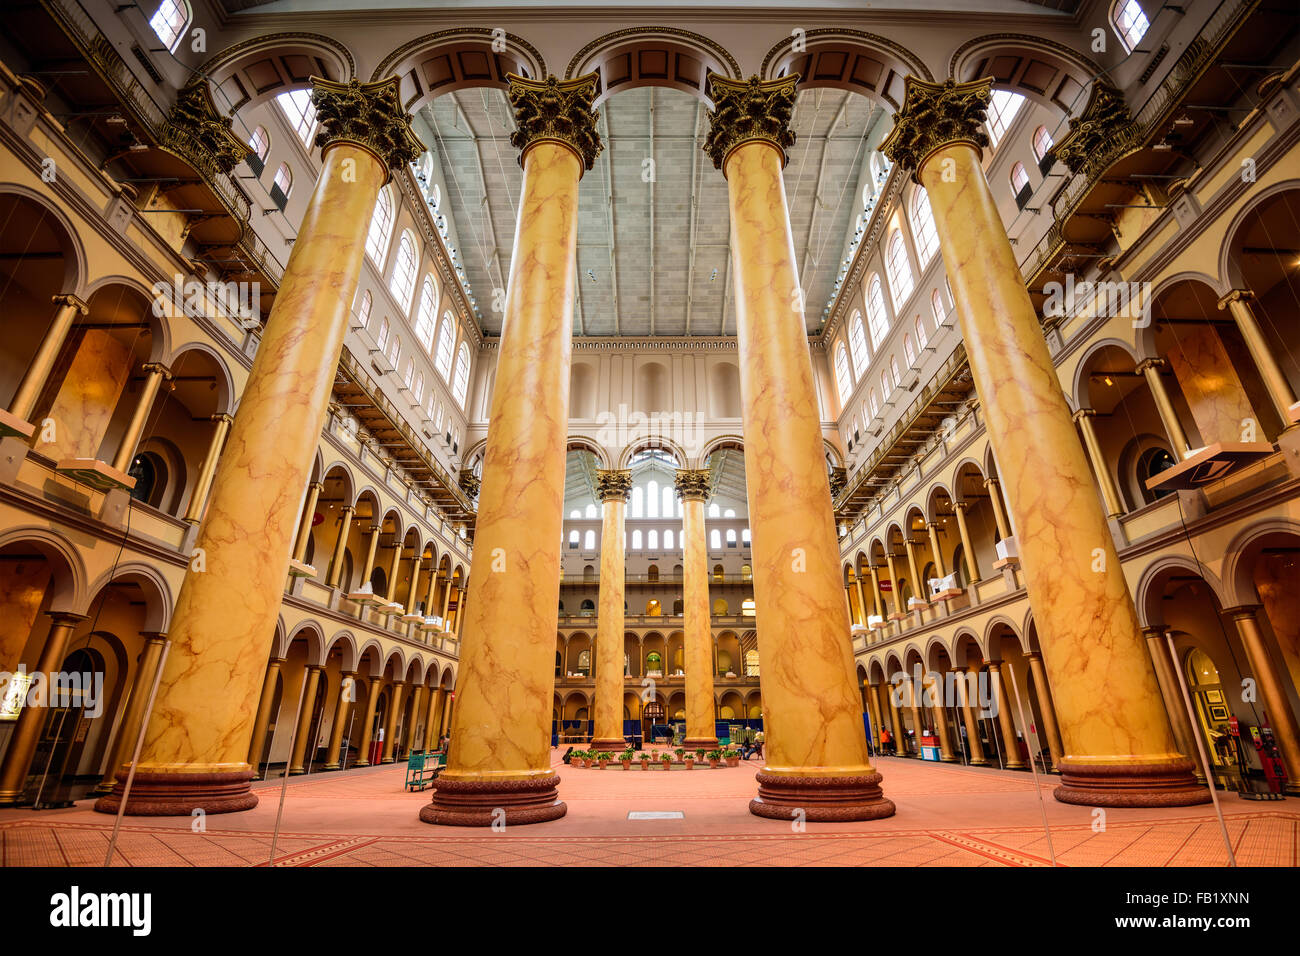 Le grand hall de l'édifice National Museum de Washington DC, USA. Banque D'Images